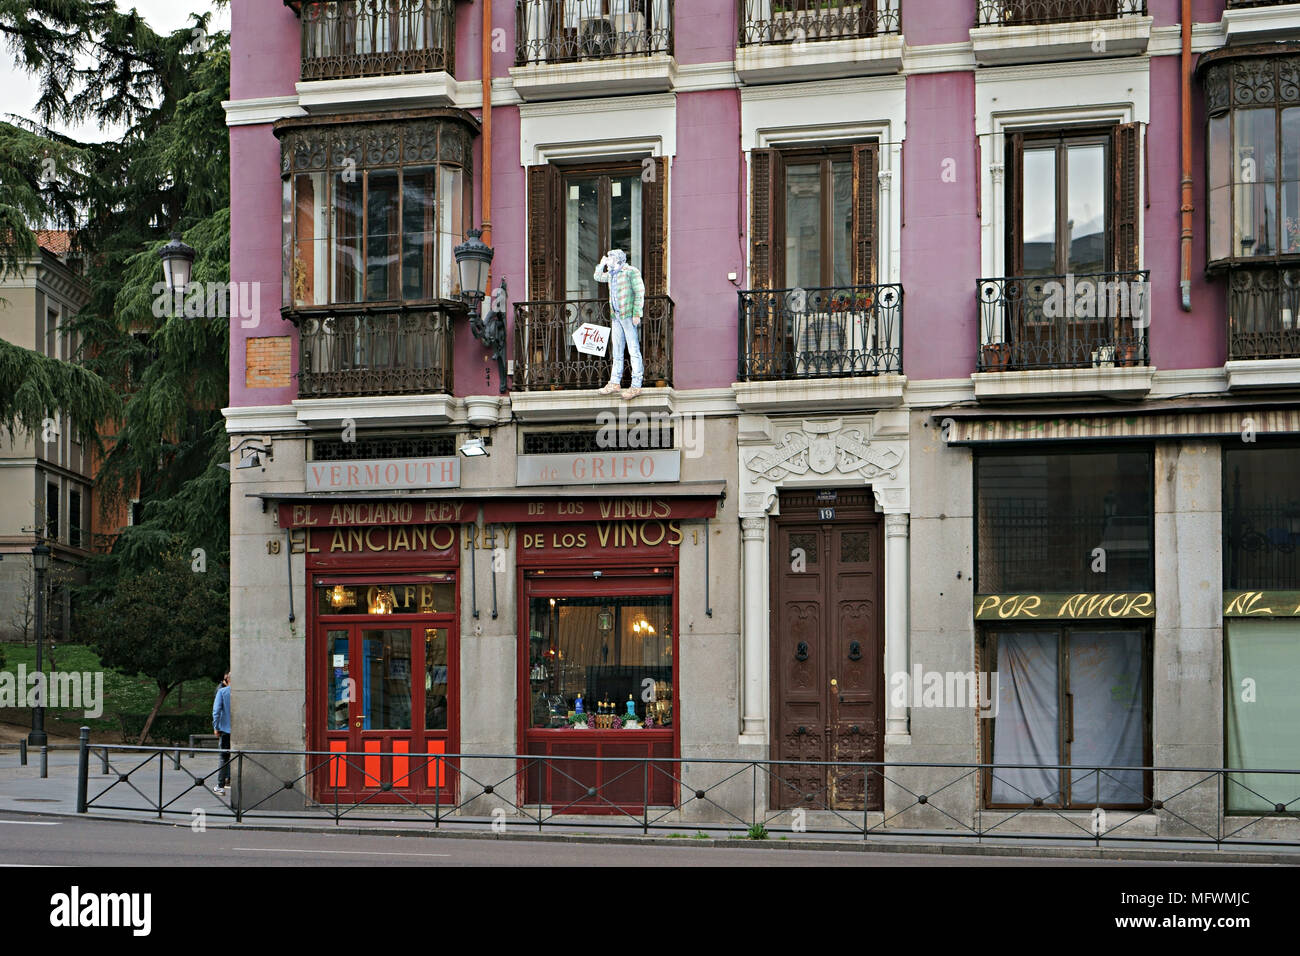 El Anciano Rey de los Vinos, wine store e taverna in calle de bailen, Madrid, Spagna Foto Stock